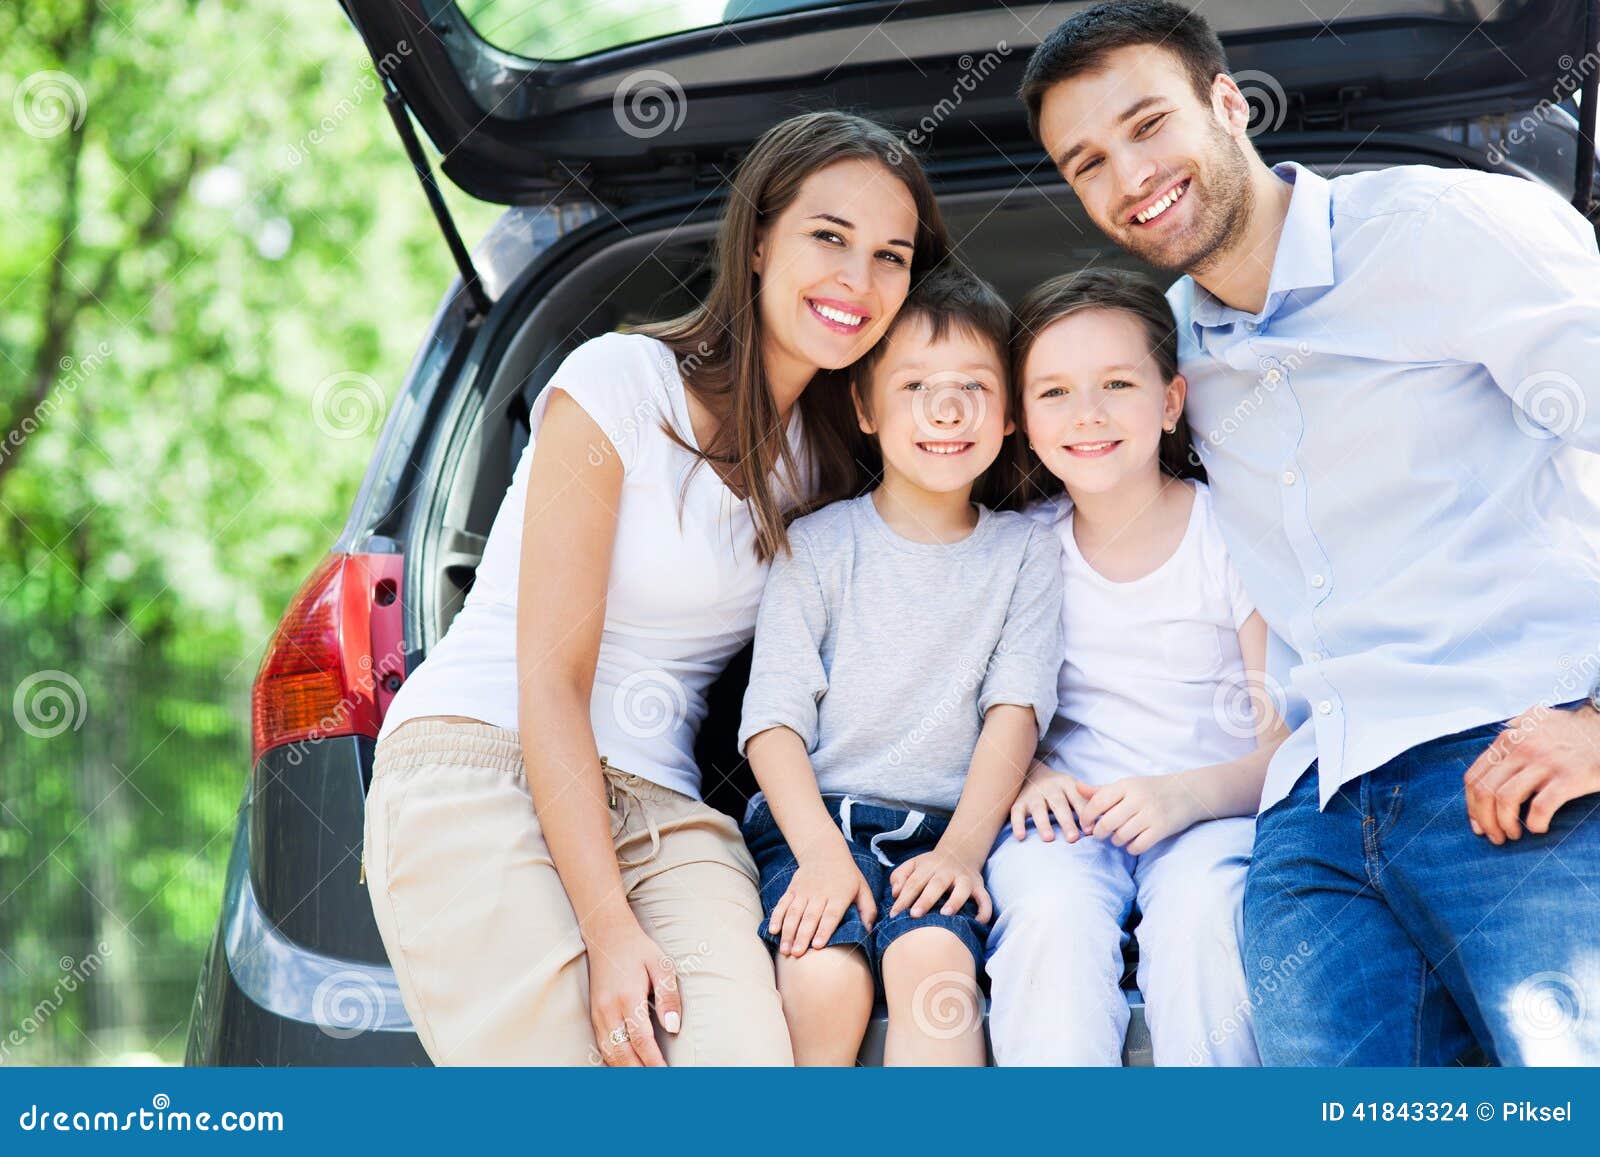 Почему машины родители. Семья в машине. Машина для семьи с двумя детьми. Счастливая семья в машине. Автомобиль для семьи с 4 детьми.